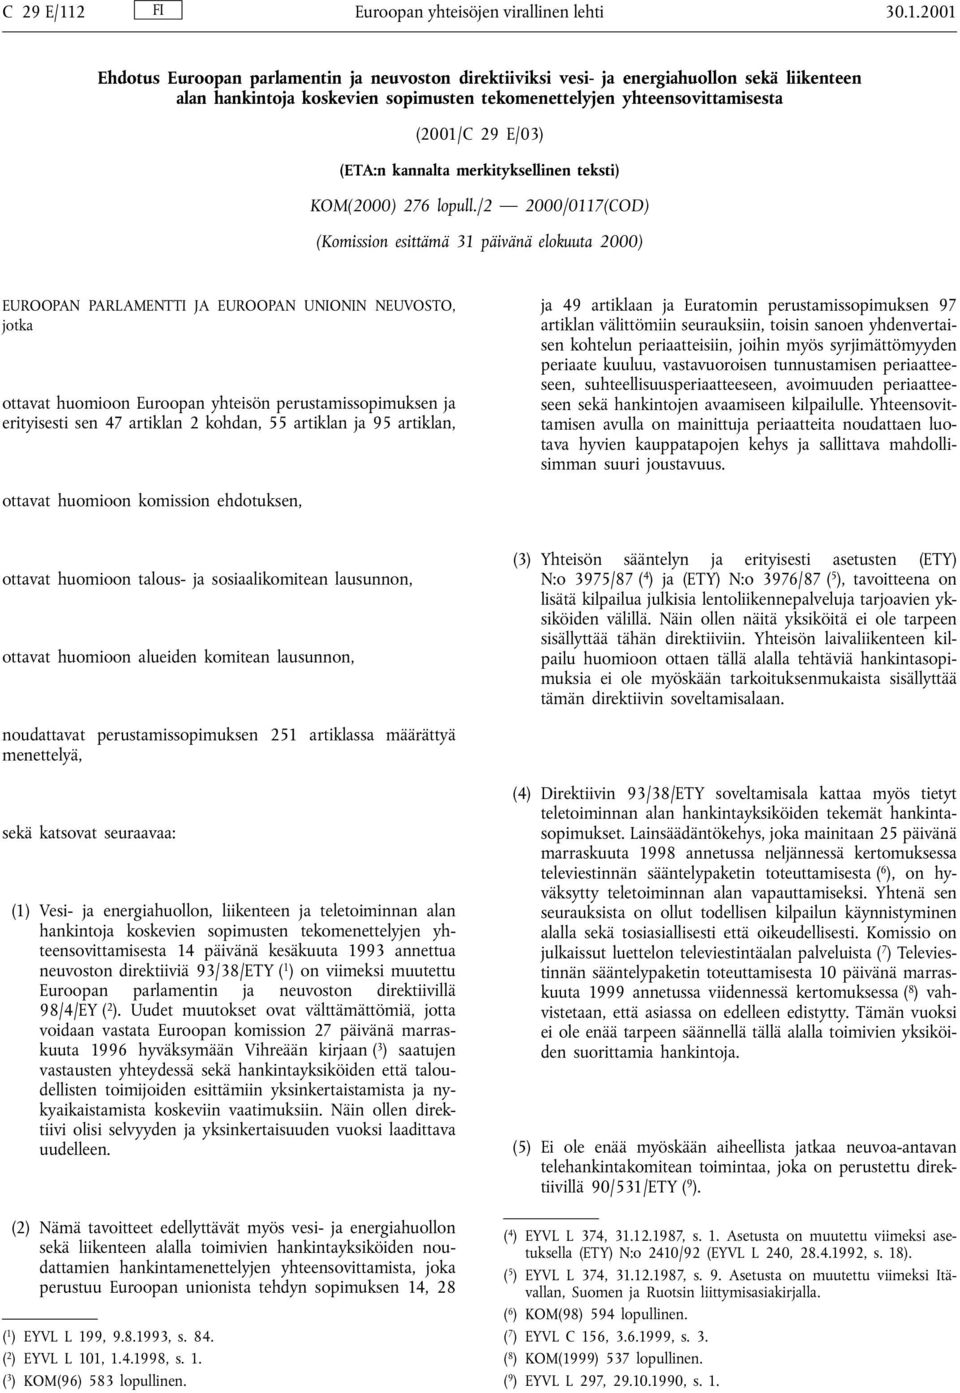 2001 Ehdotus Euroopan parlamentin ja neuvoston direktiiviksi vesi- ja energiahuollon sekä liikenteen alan hankintoja koskevien sopimusten tekomenettelyjen yhteensovittamisesta (2001/C 29 E/03) (ETA:n